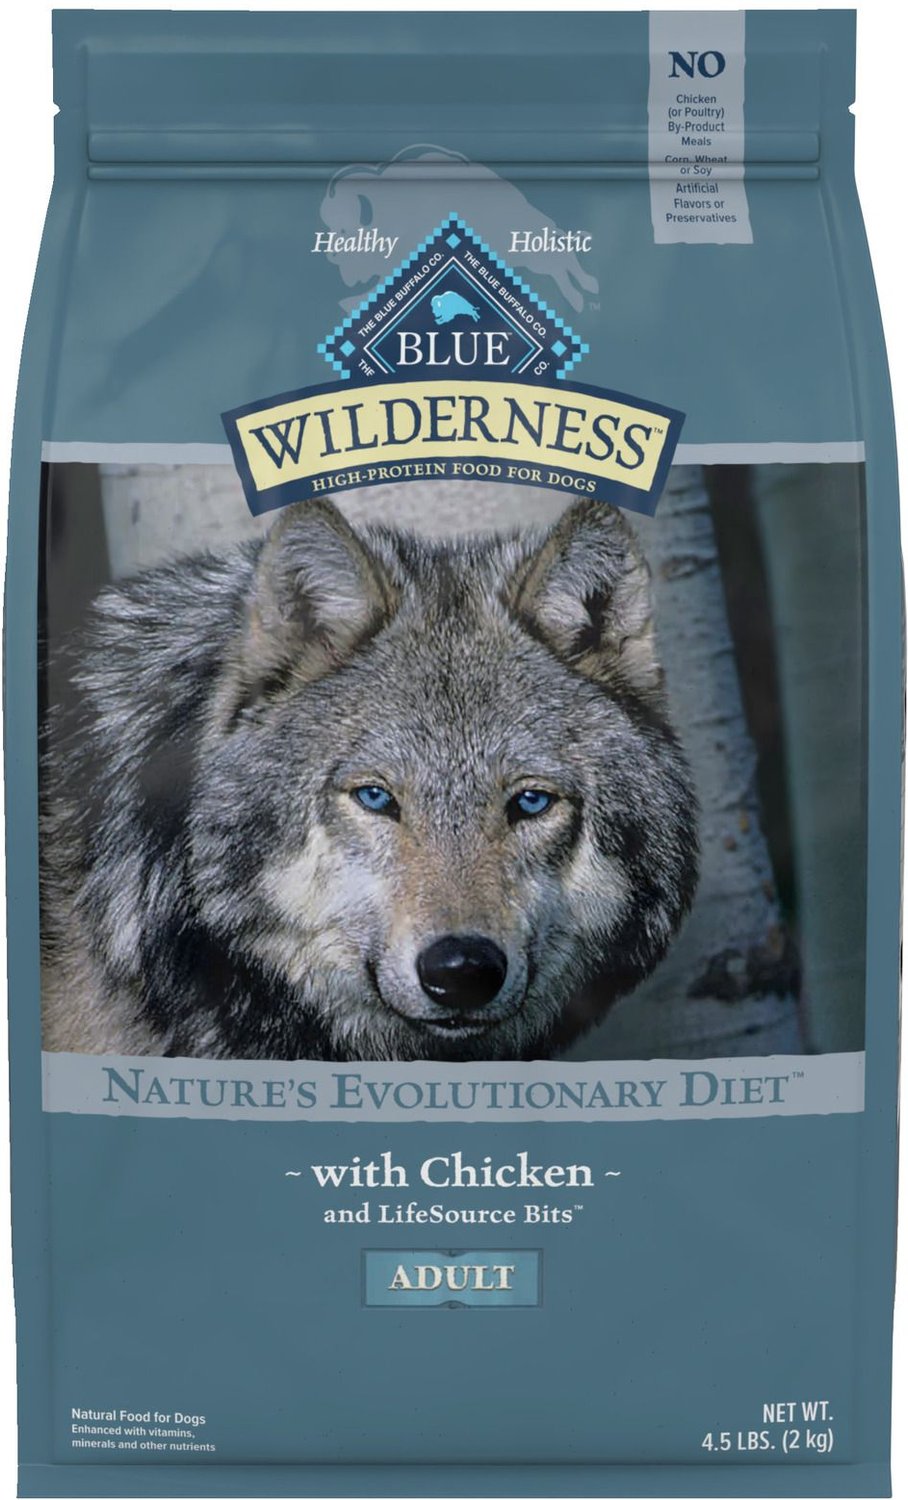 Blue Buffalo Wilderness Puppy Food Feeding Chart